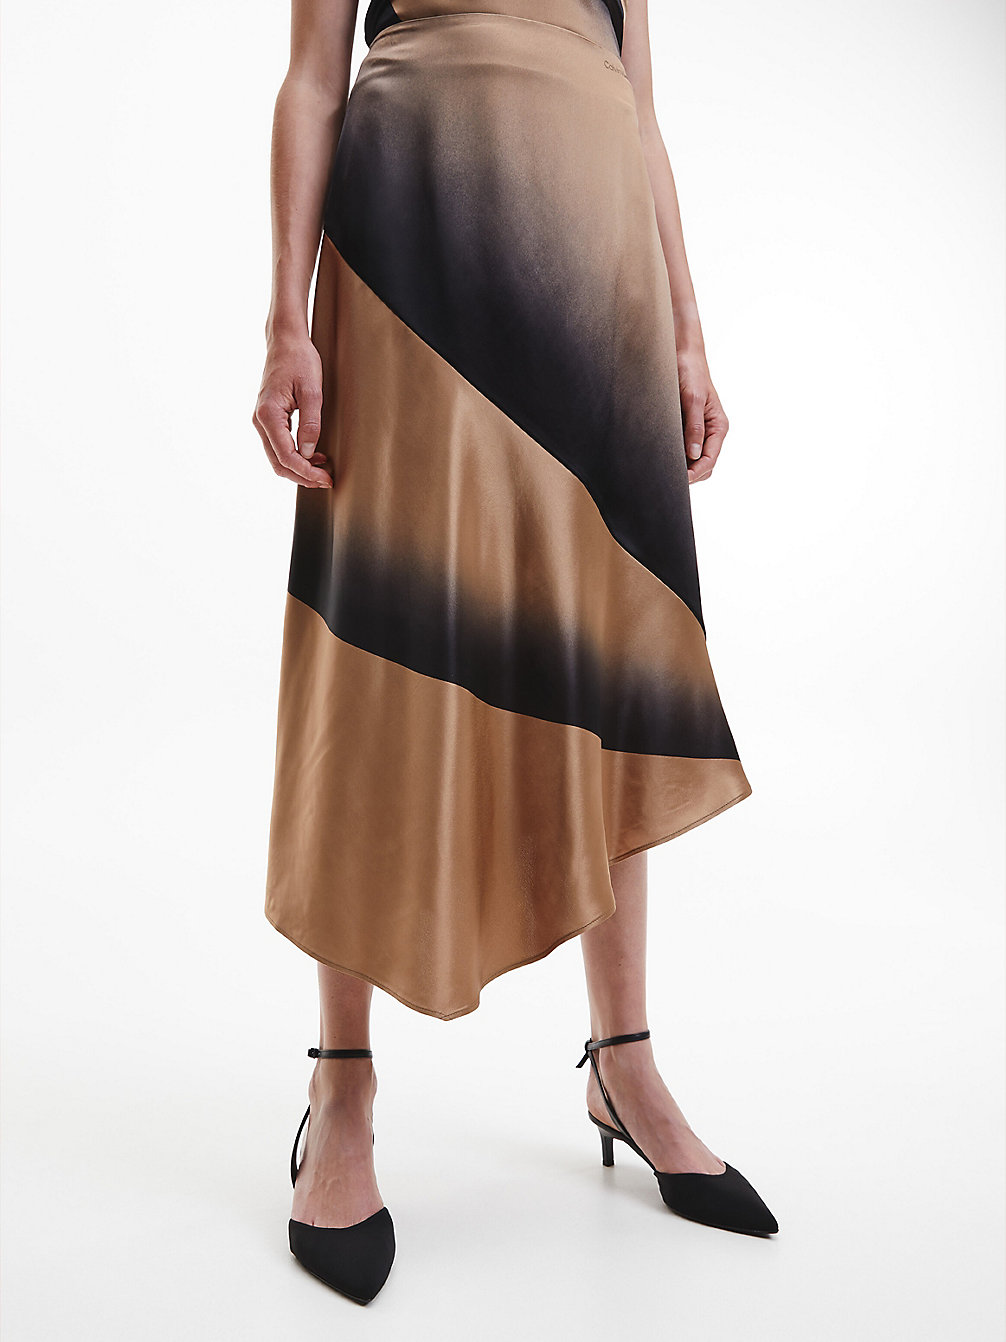 ARCHITECTURAL SPRAY / SAFARI CANVAS > Асимметричная юбка с затененным принтом > undefined Женщины - Calvin Klein